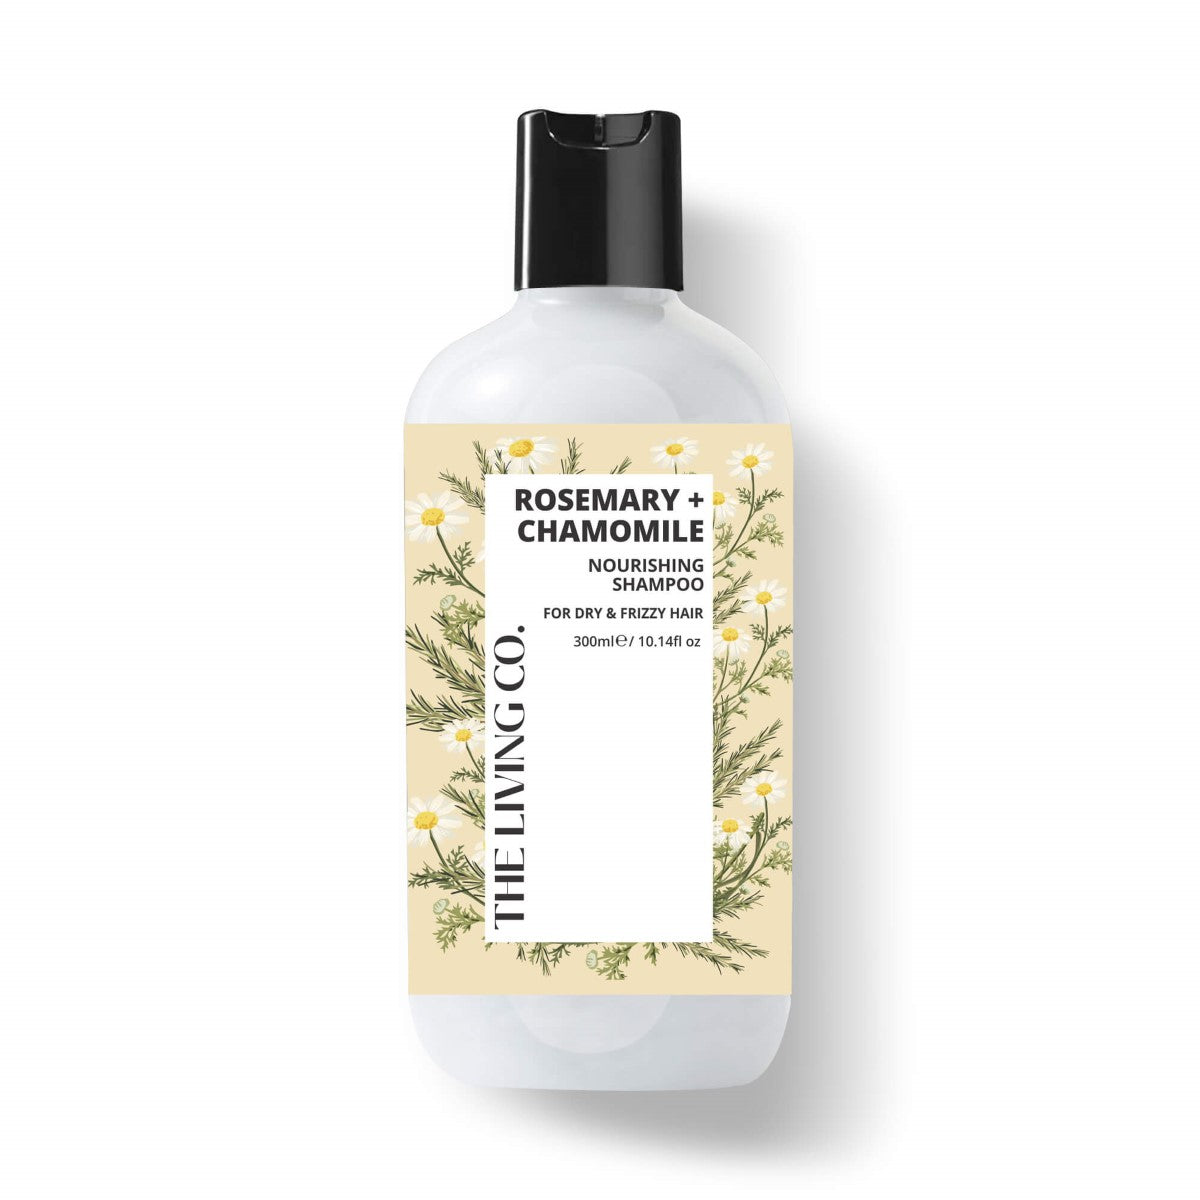 Nourishing Shampoo With Rosemary + Chamomile